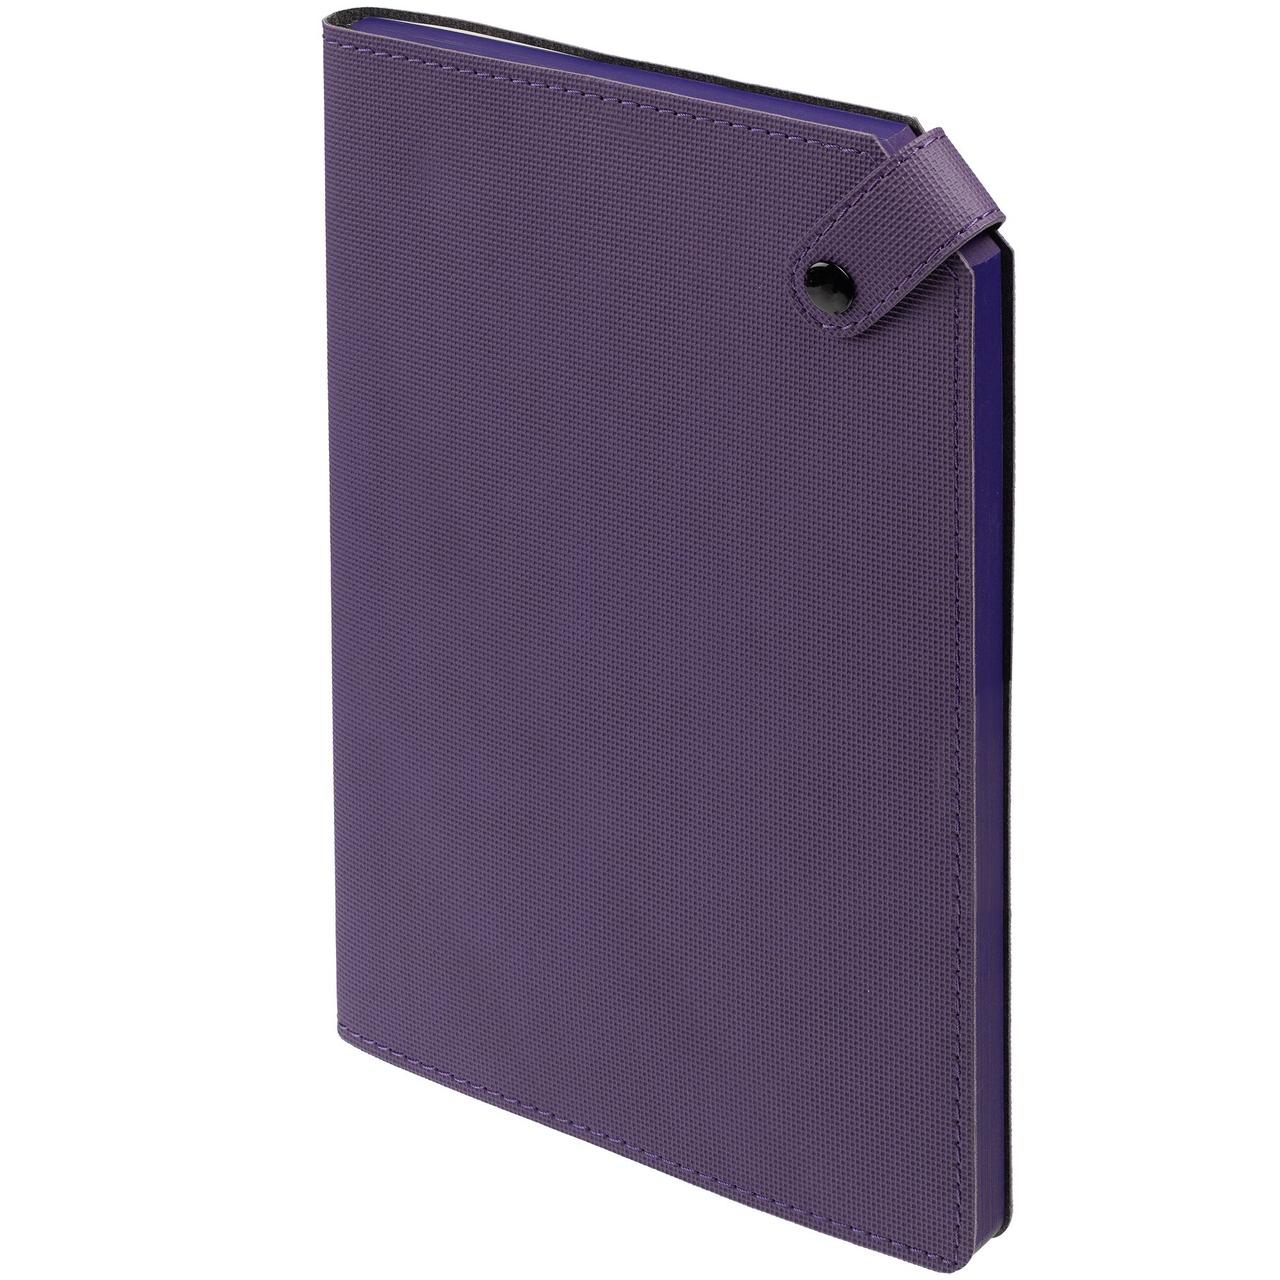 Ежедневник Tenax, недатированный, фиолетовый (артикул 11668.70)